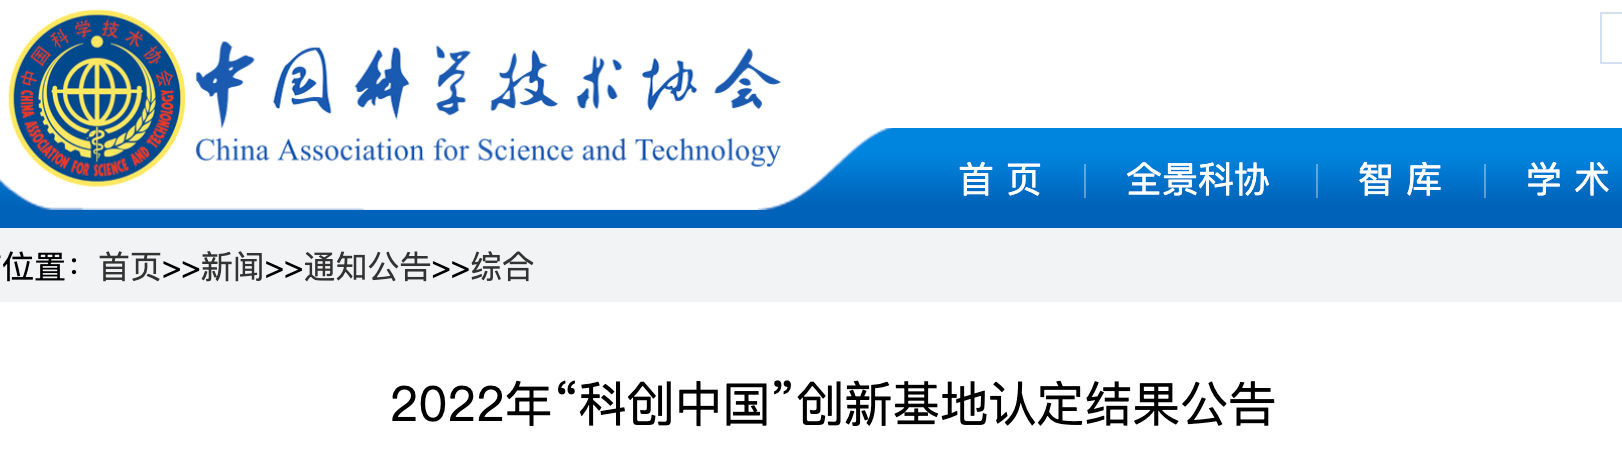 唯一一家医疗AI企业数坤科技入选中国科协首批“科创中国”创新基地